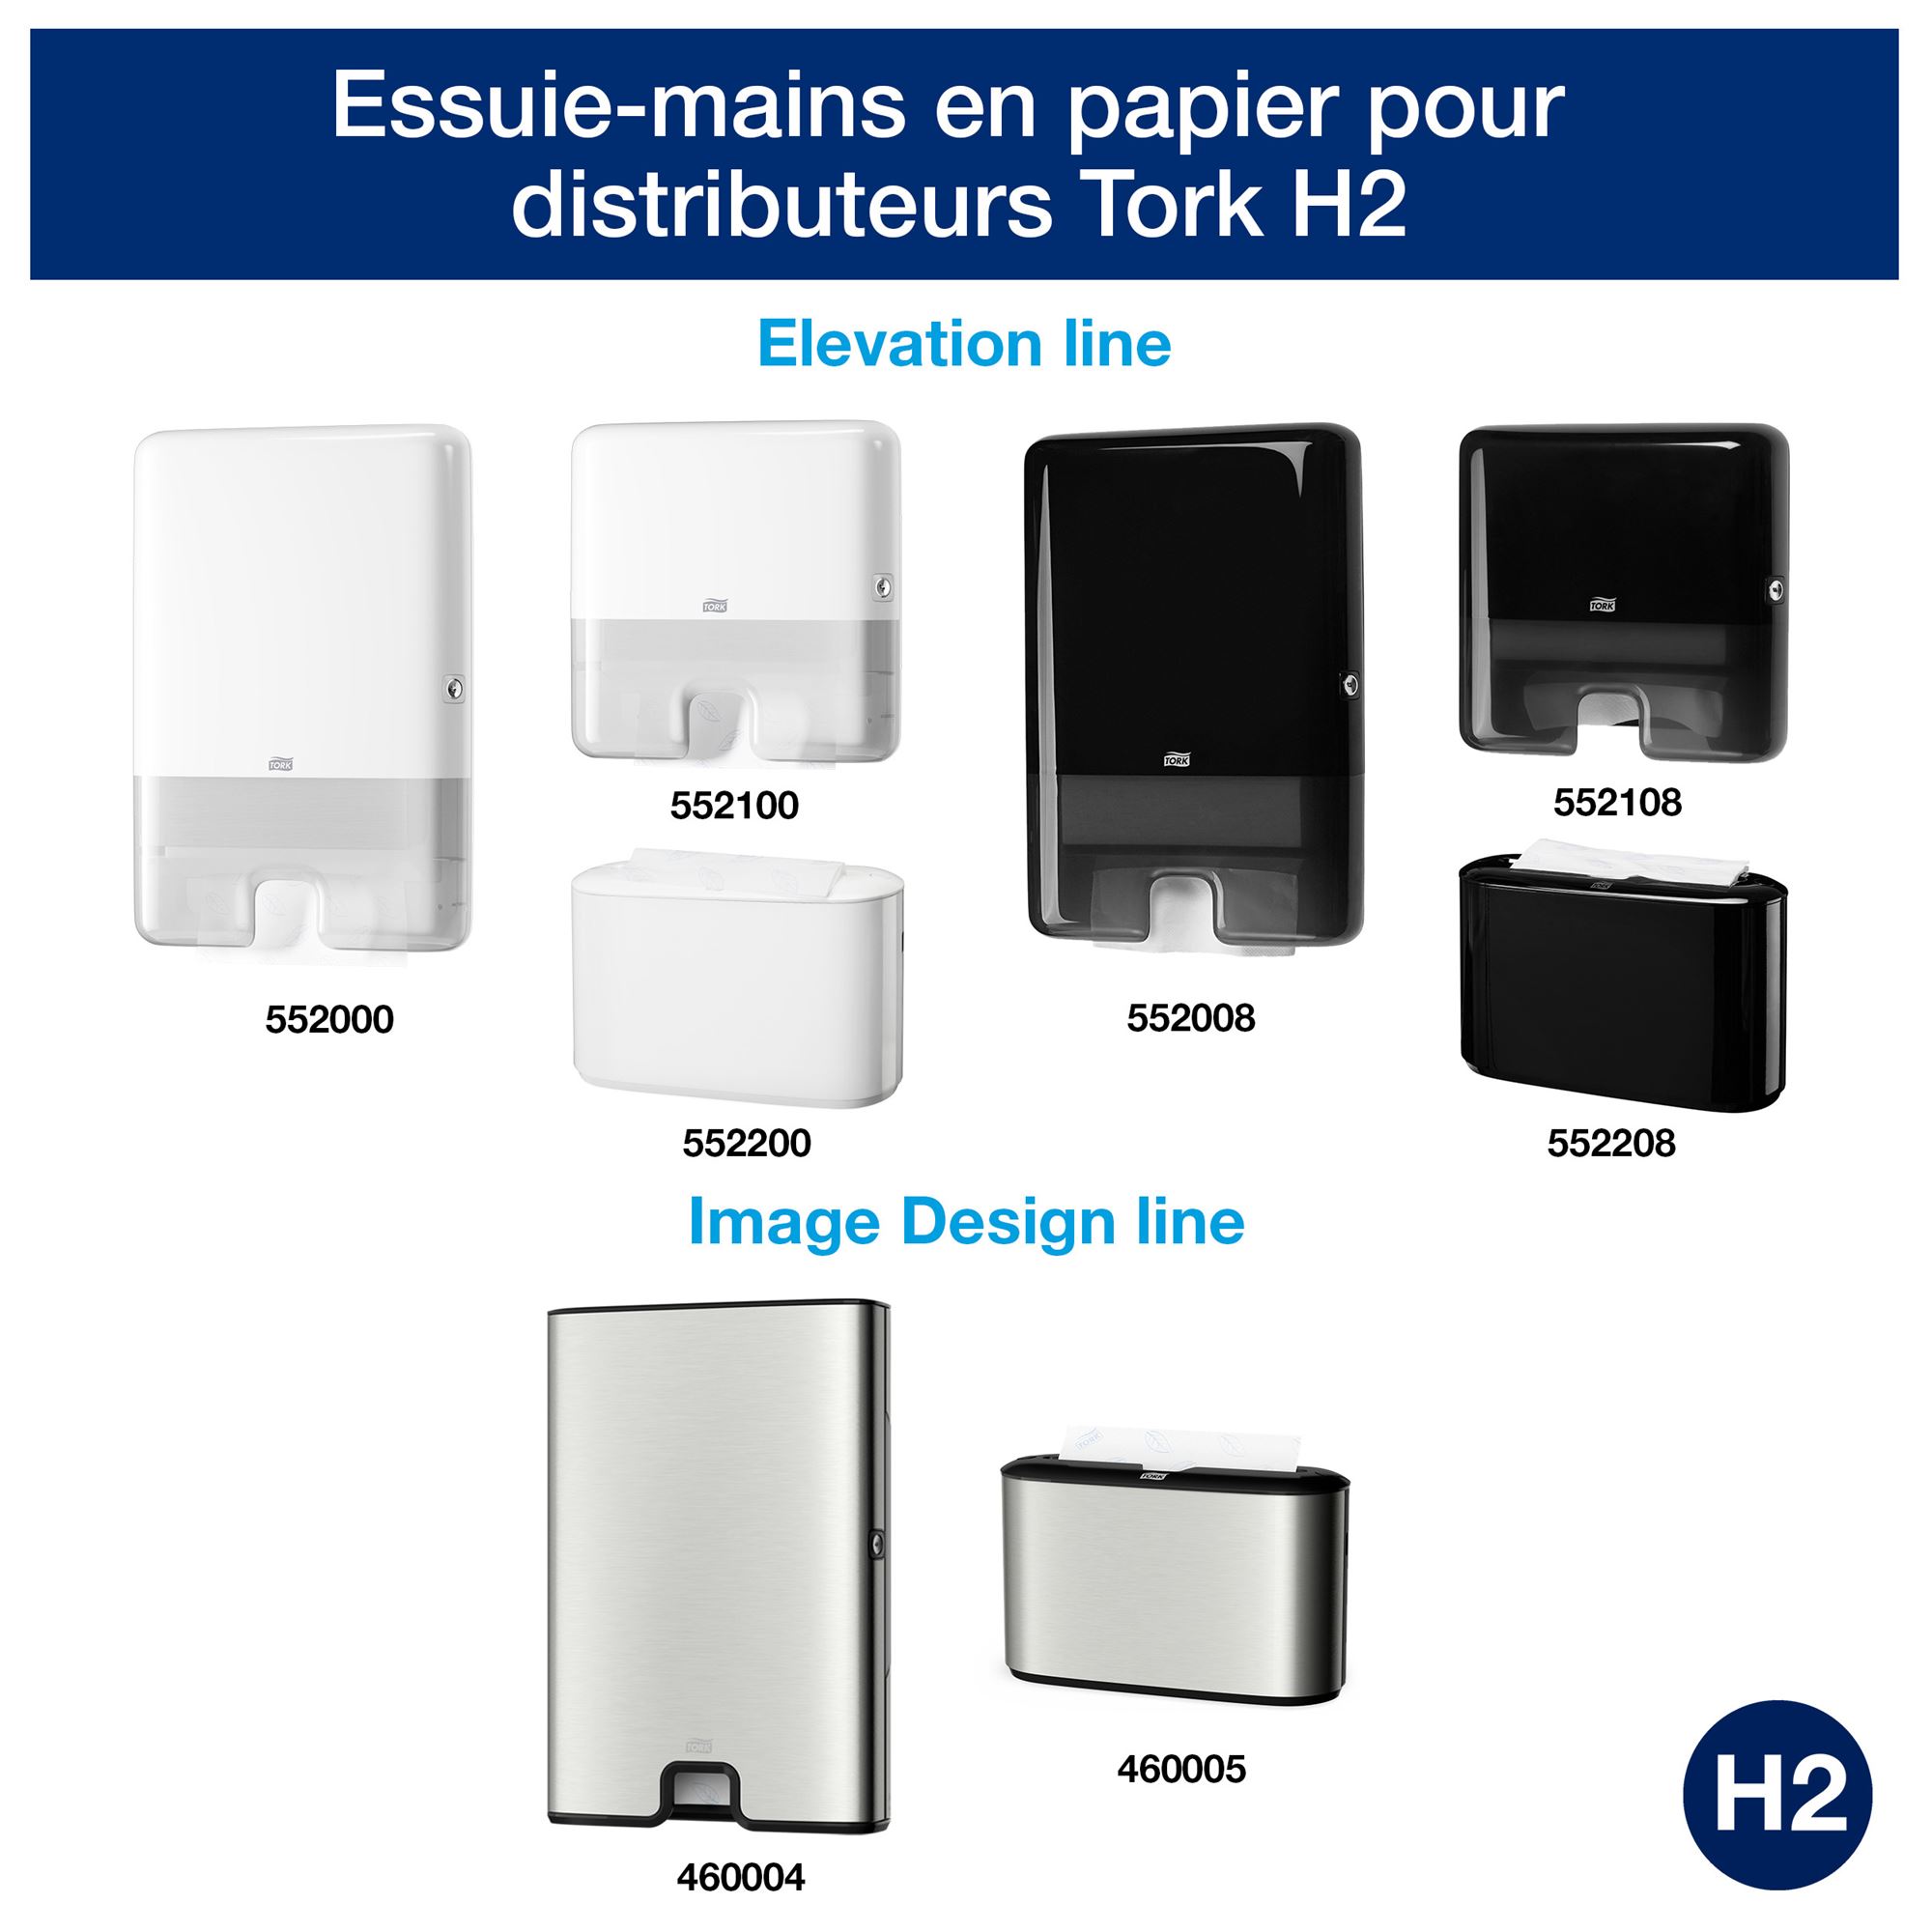 6 Rouleaux d'Essuies-mains AUTOCUP 150 m ÉCOLABEL / csj.emballages.com